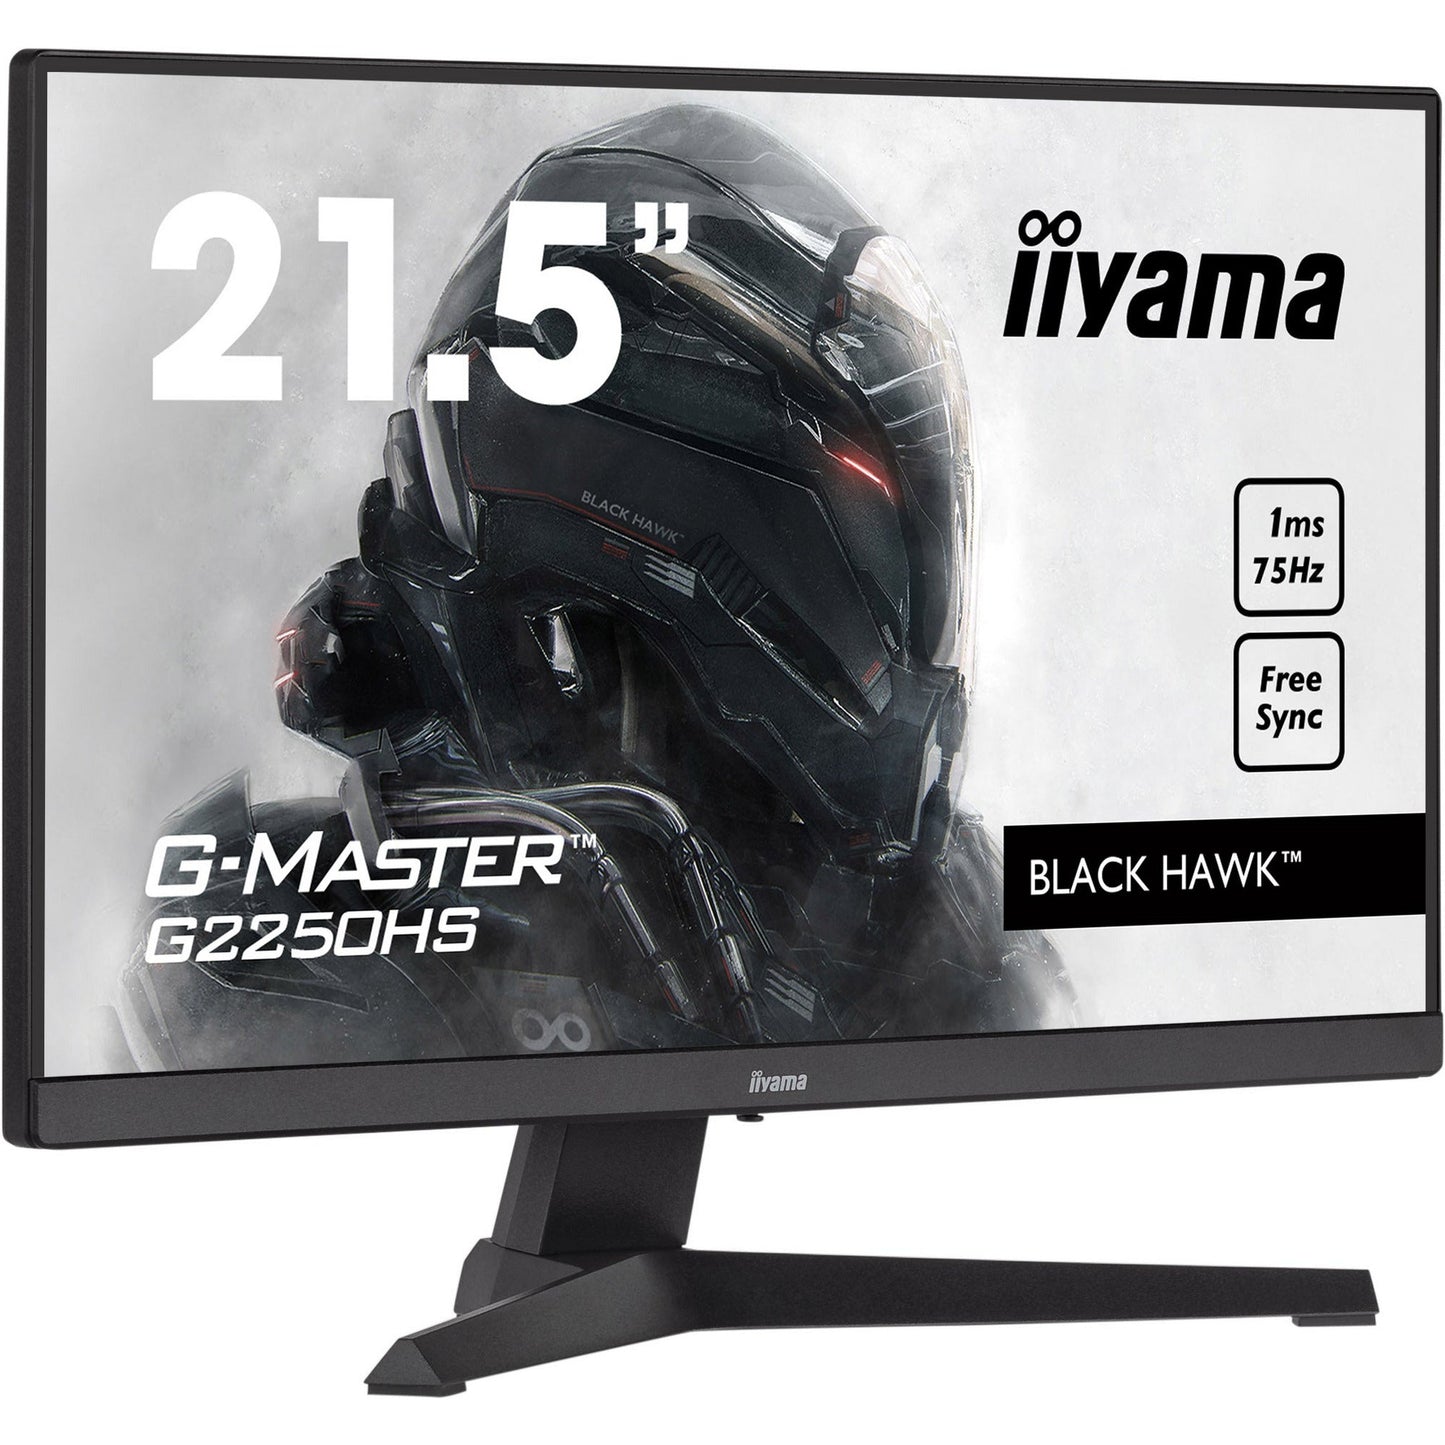 Dark Slate Gray iiyama G-Master G2250HS-B1 21.5" VA Panel 1ms MPRT Black Hawk Gaming Monitor